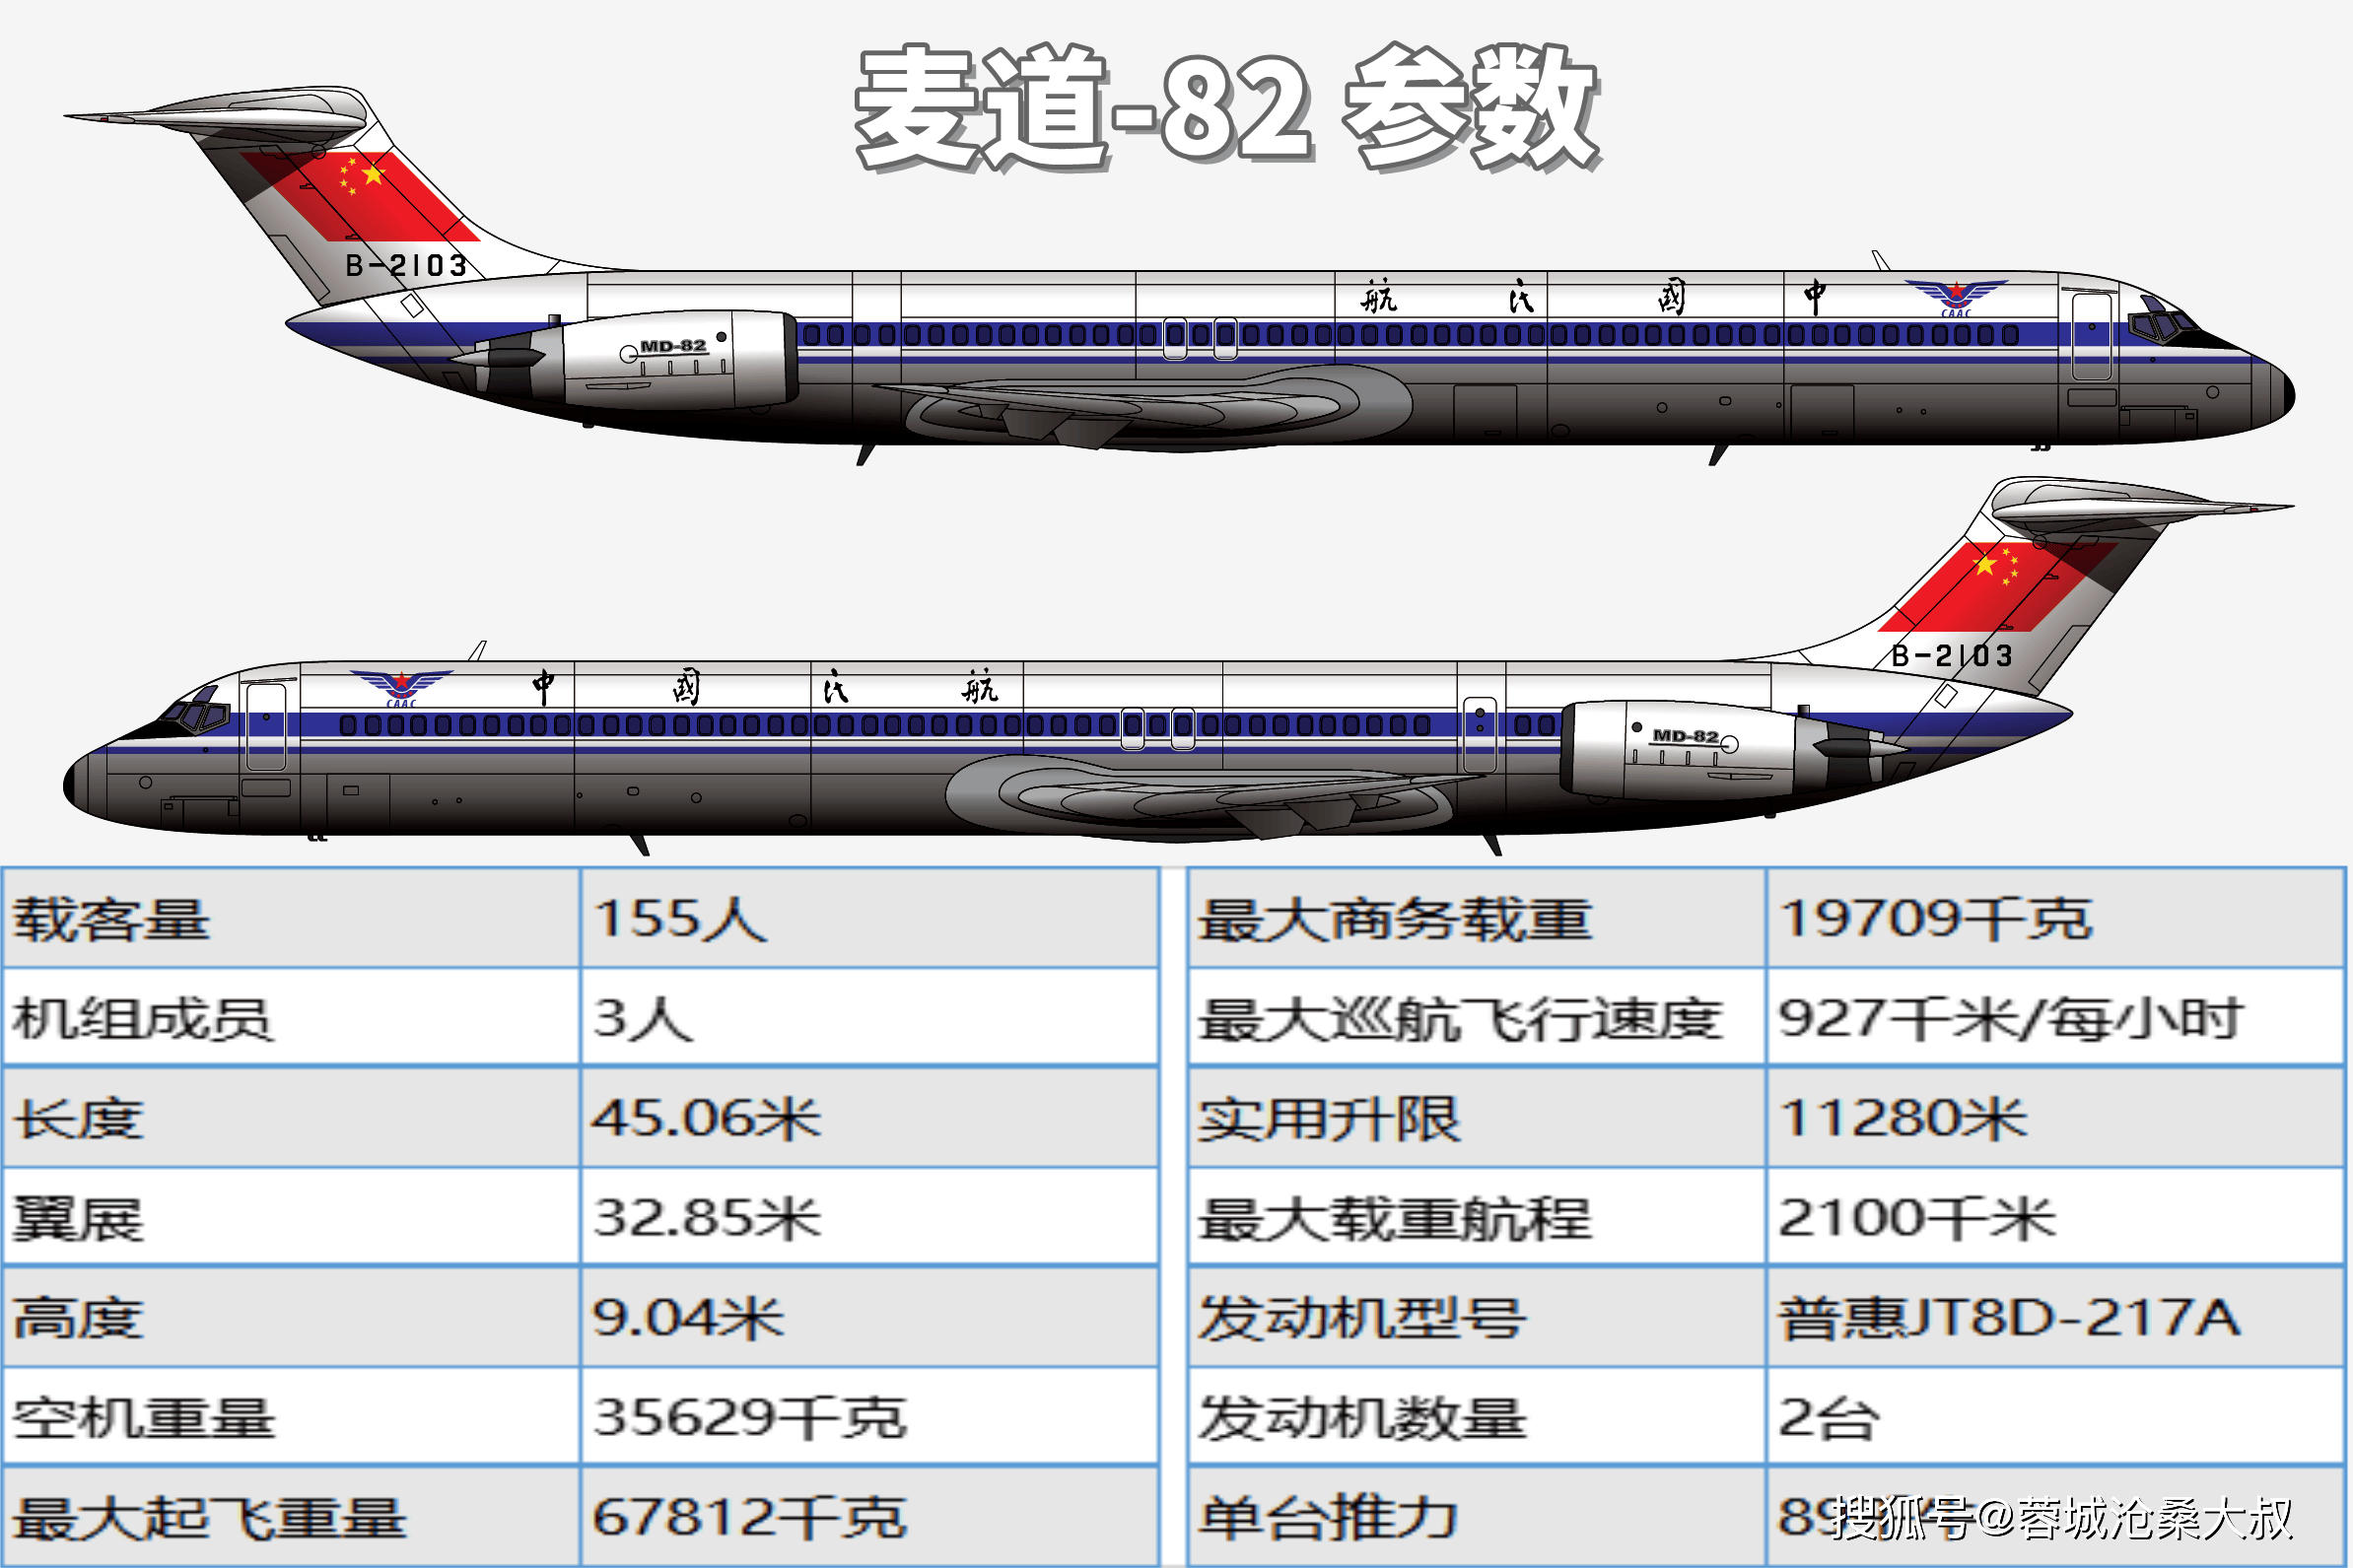 在运10飞机项目终止仅仅一个月后的1985年3月31日,上海航空工业公司就